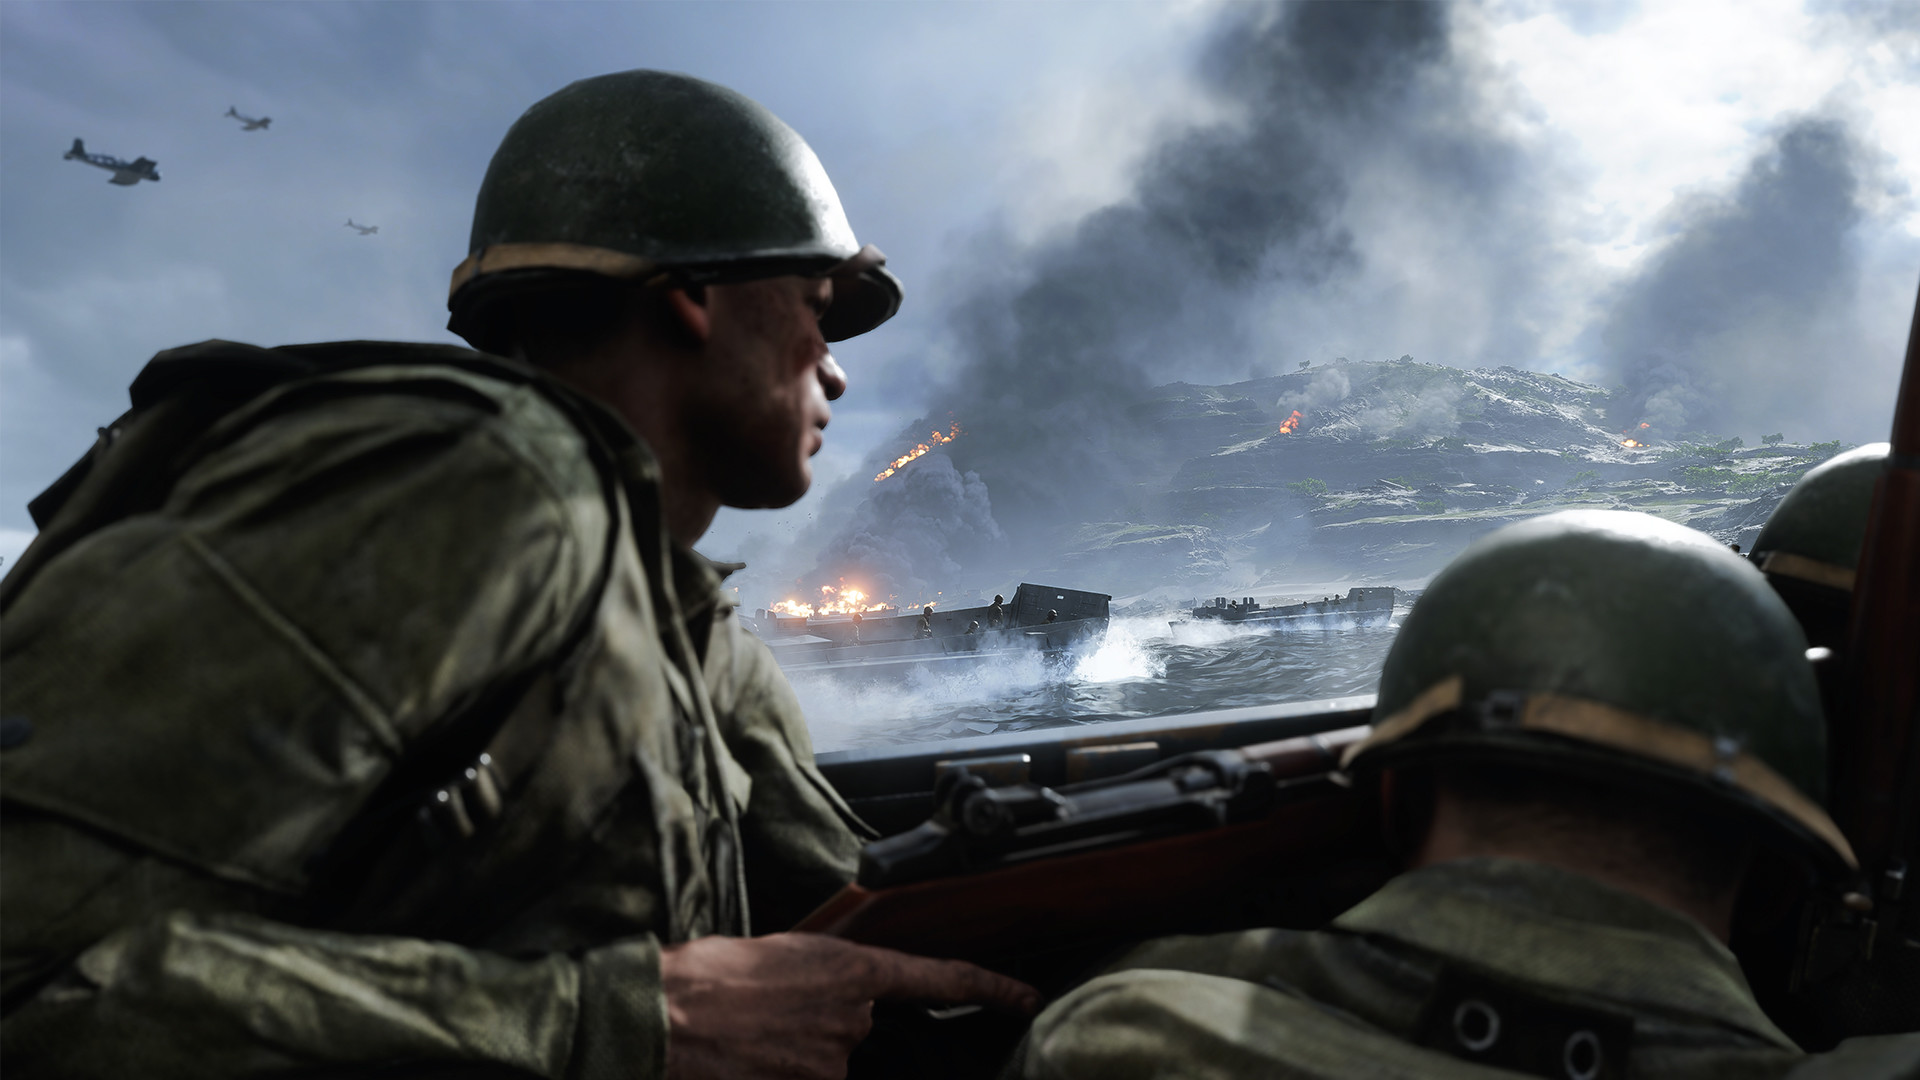 Battlefield V screenshot